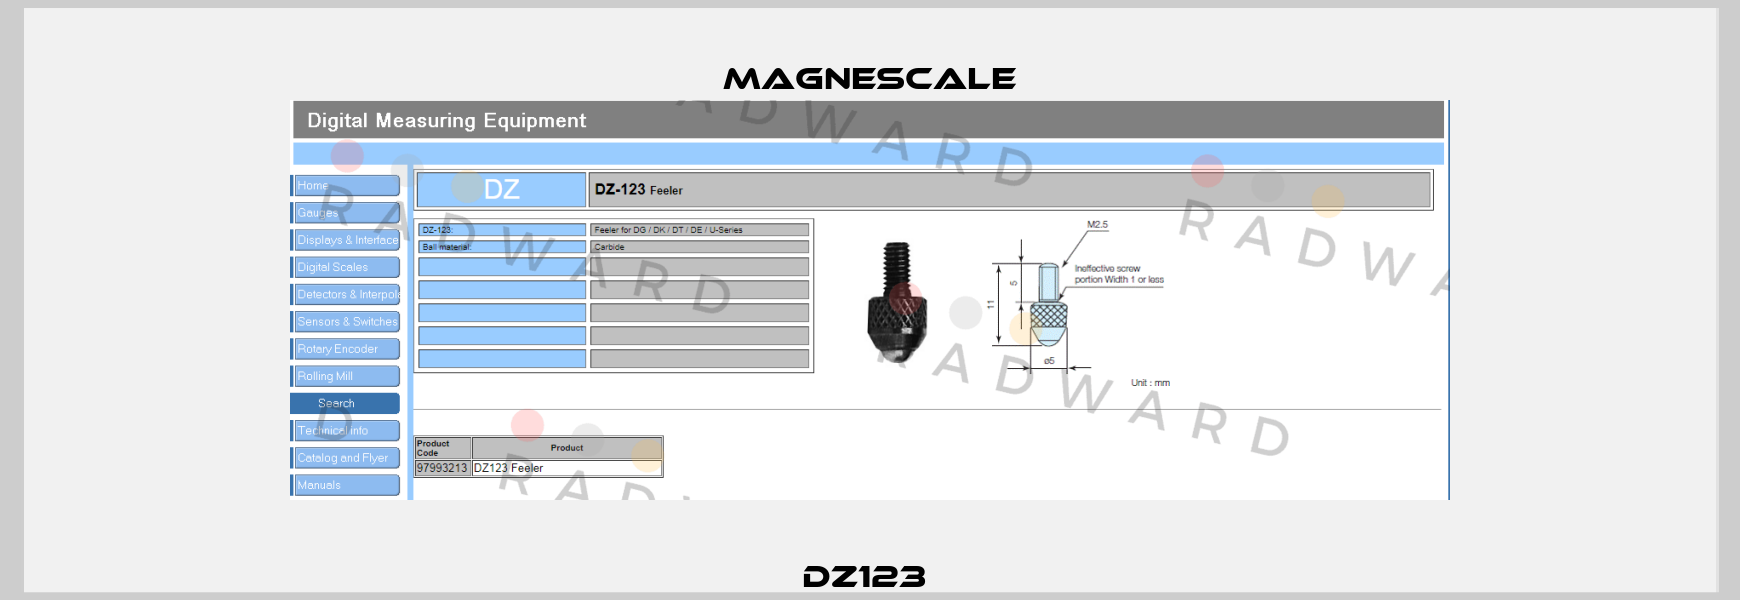 DZ123  Magnescale